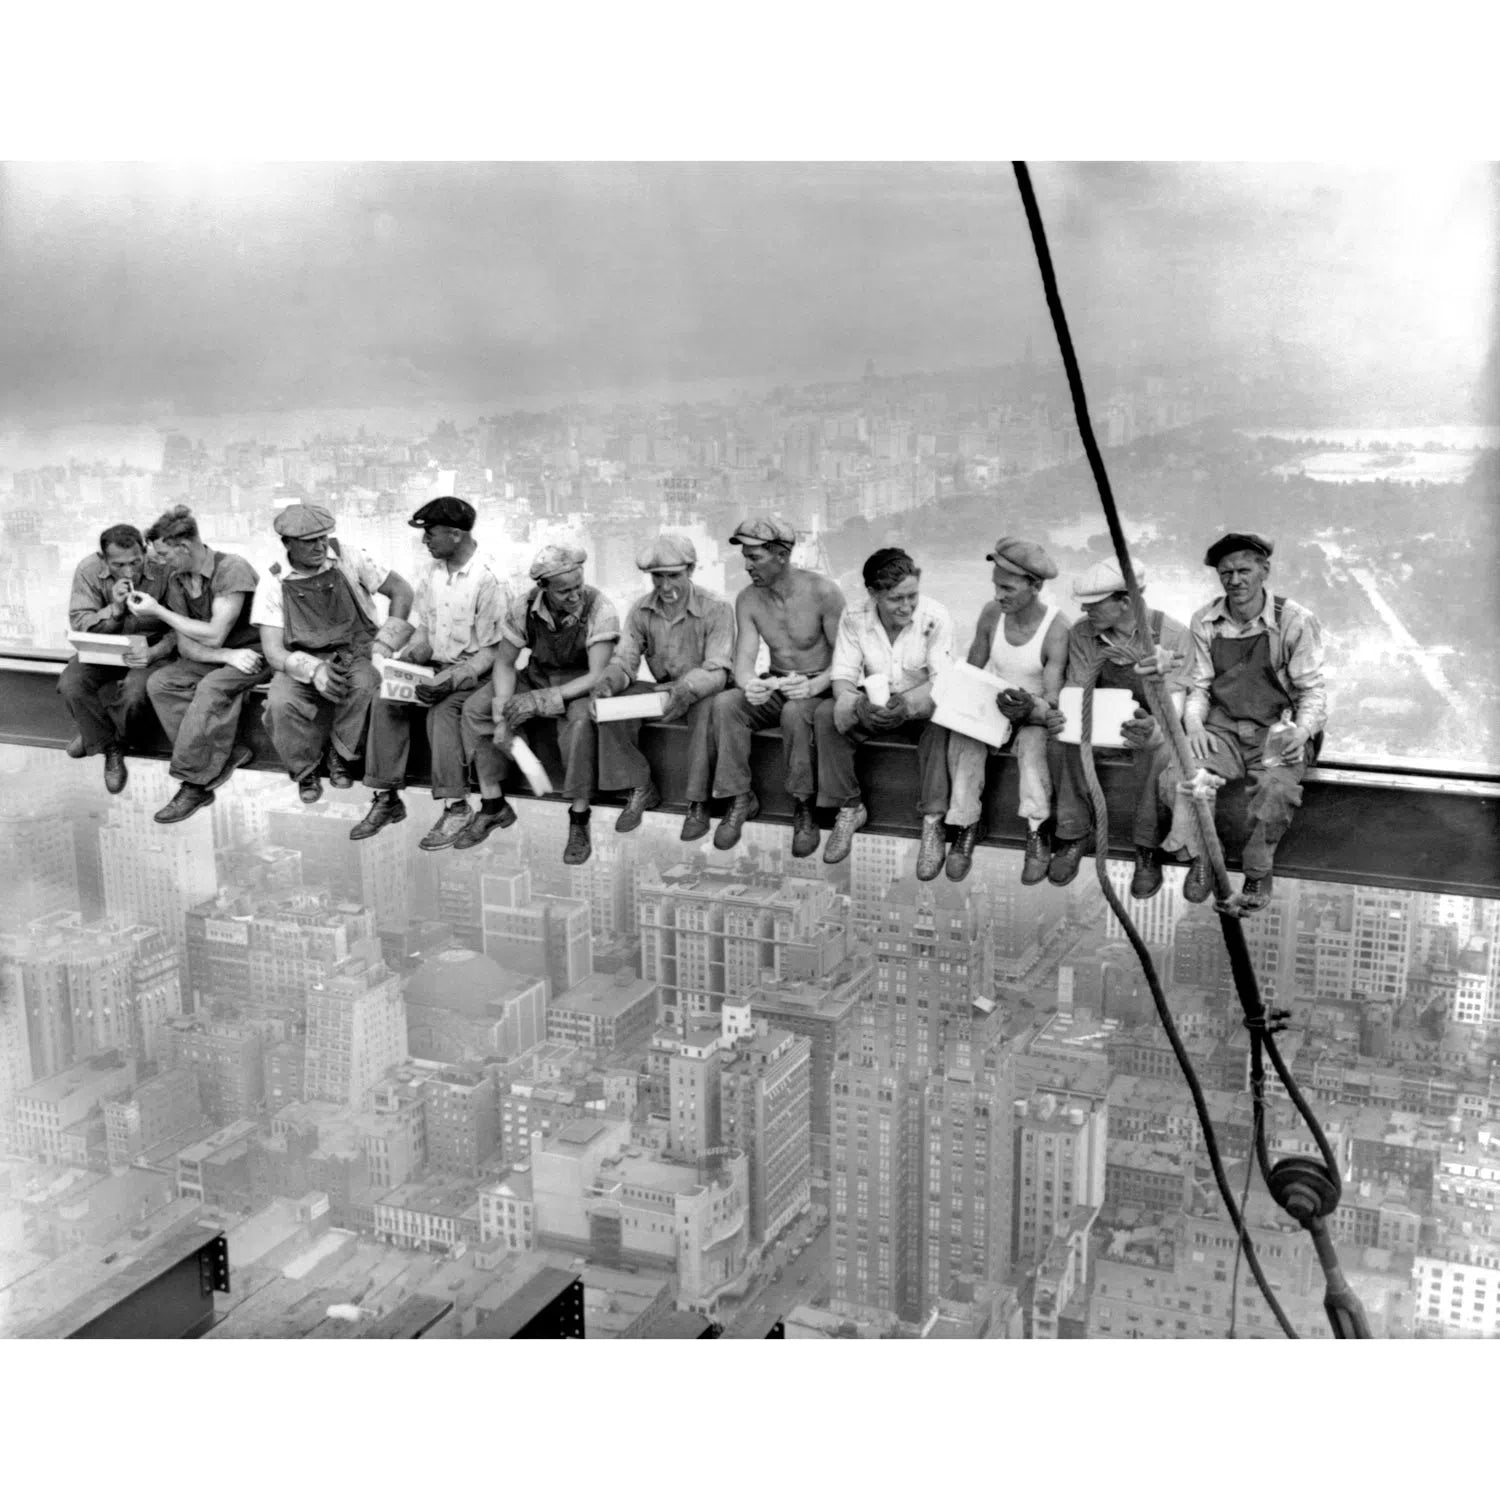 Déjeuner en haut d'un building - Charles Ebbets (1932)-Imagesdartistes